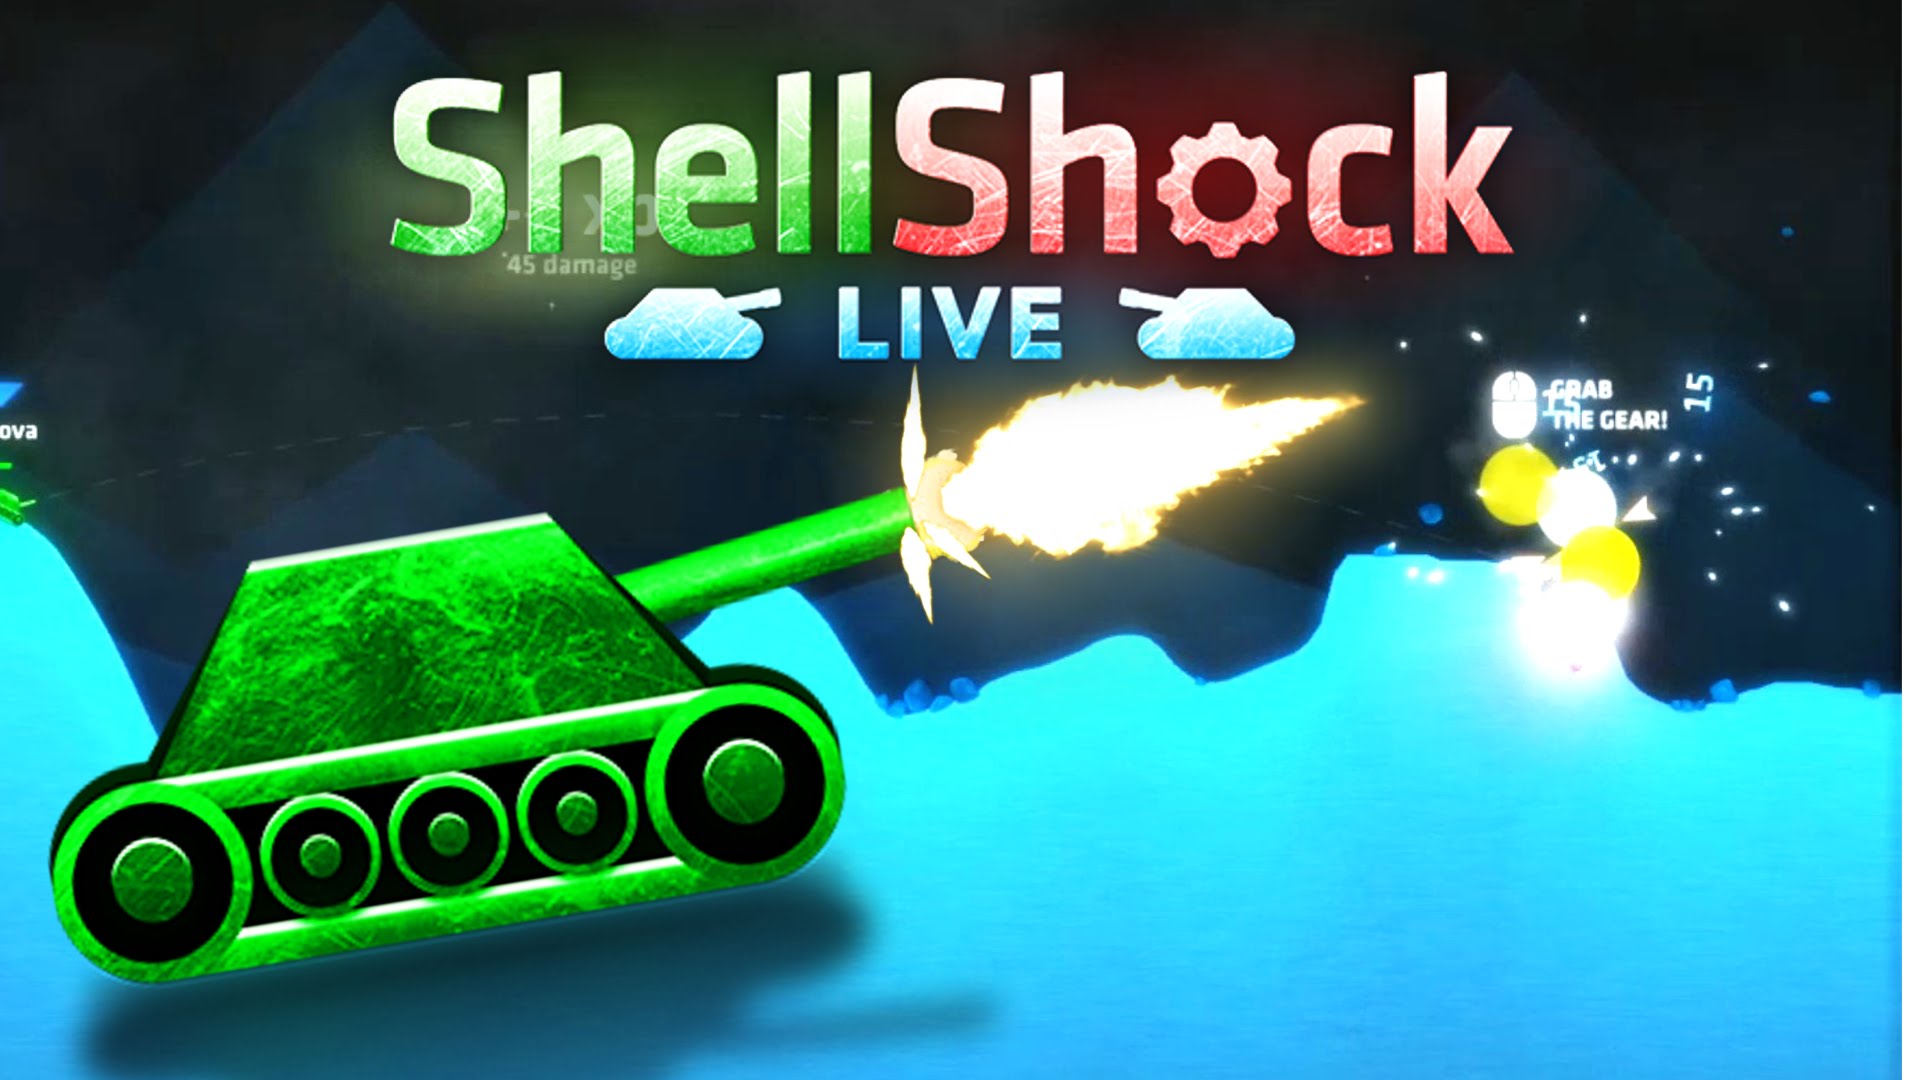 shellshock live ruler image